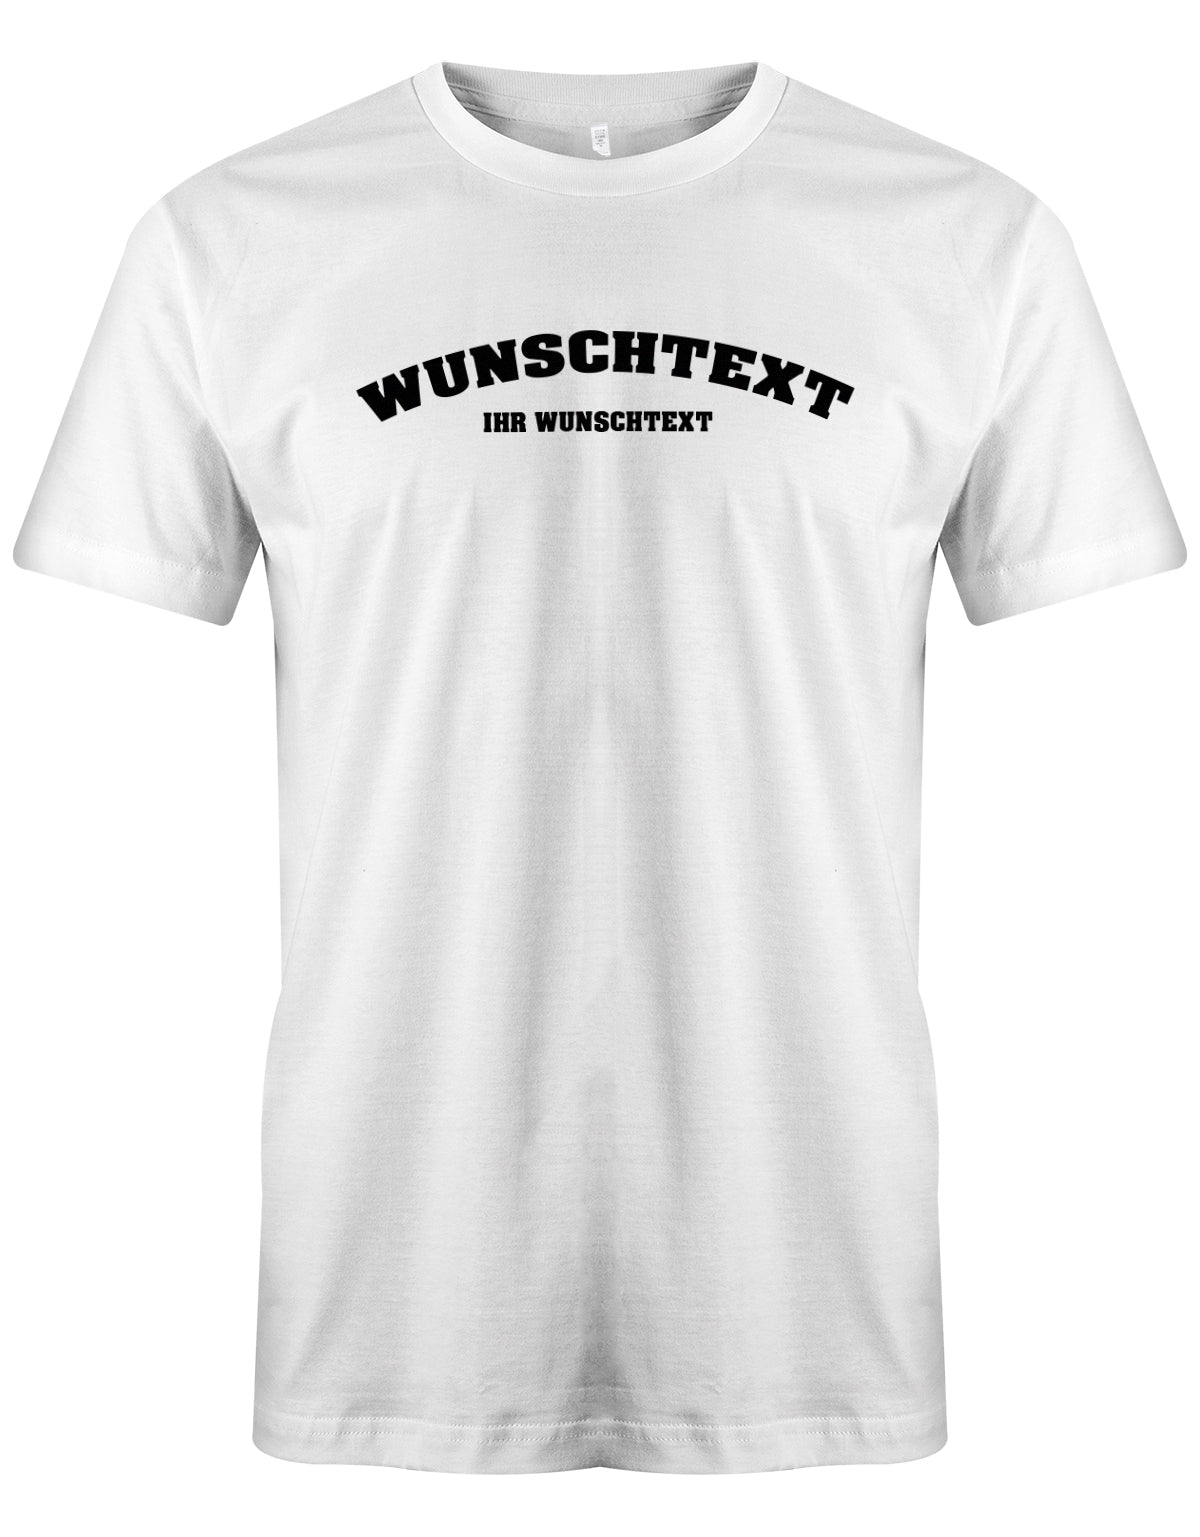 Männer Tshirt mit Wunschtext.  Abgerundeter Text im Collage-Style. Weiss